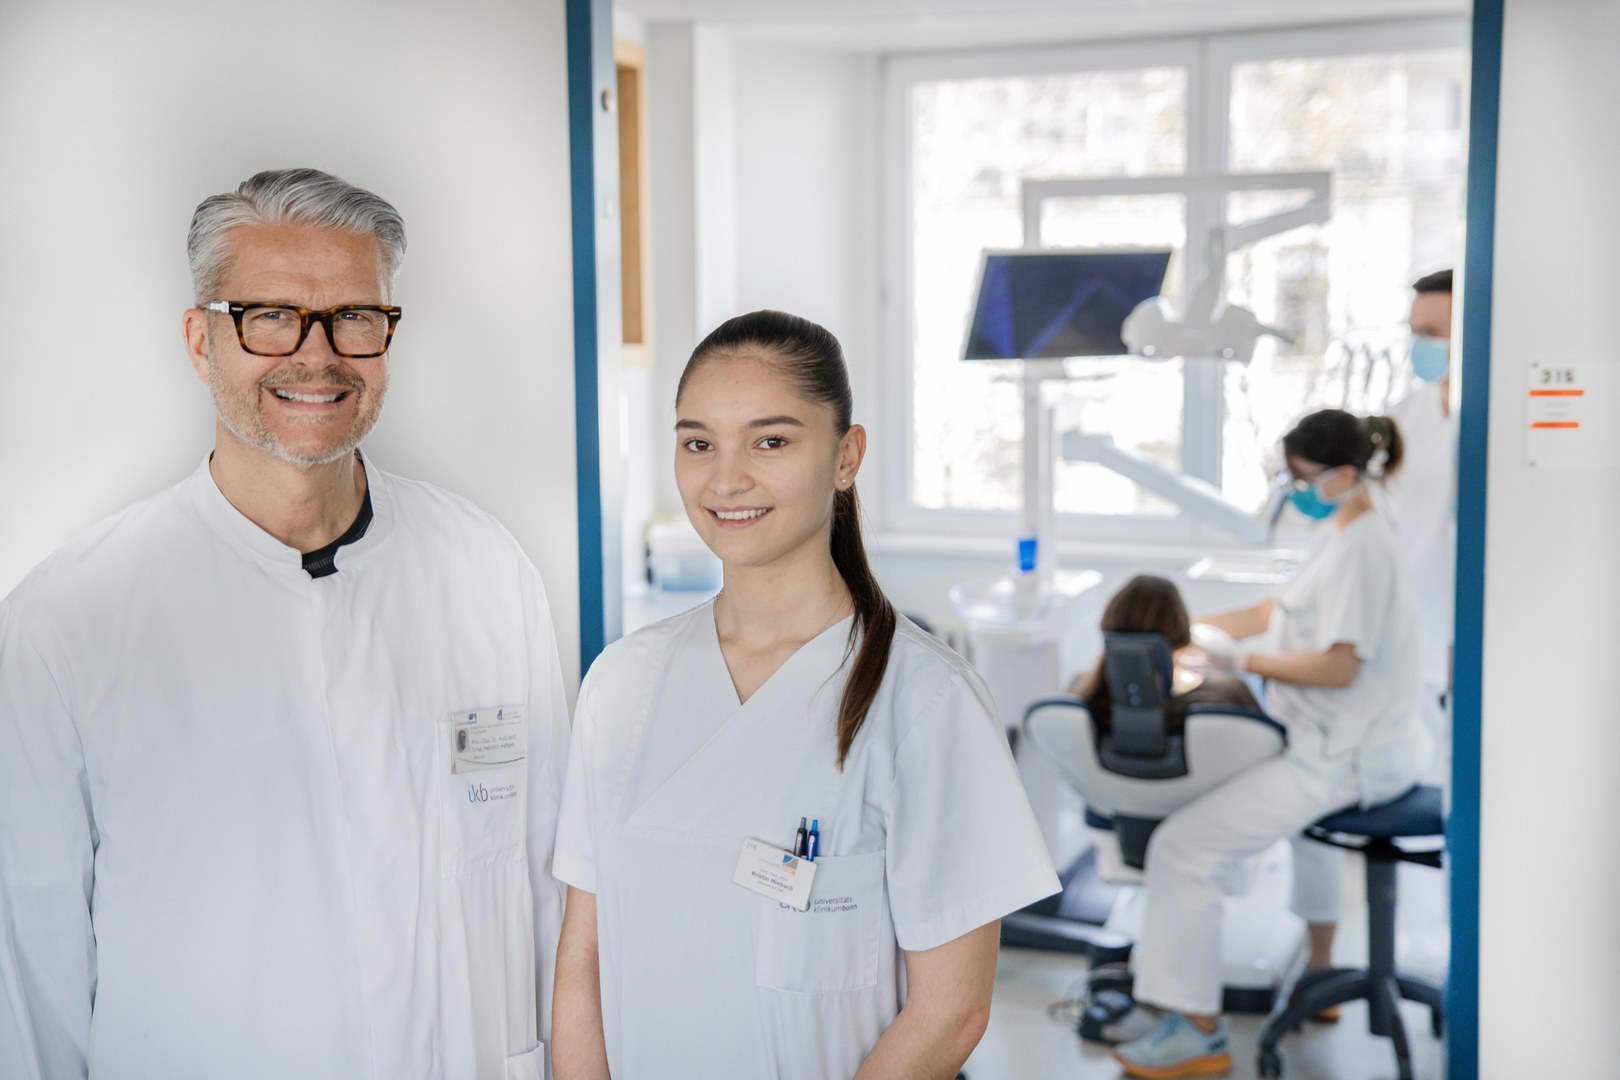 Zahnmedizinische Behandlung mit Qualitätskontrolle und individueller Betreuung: